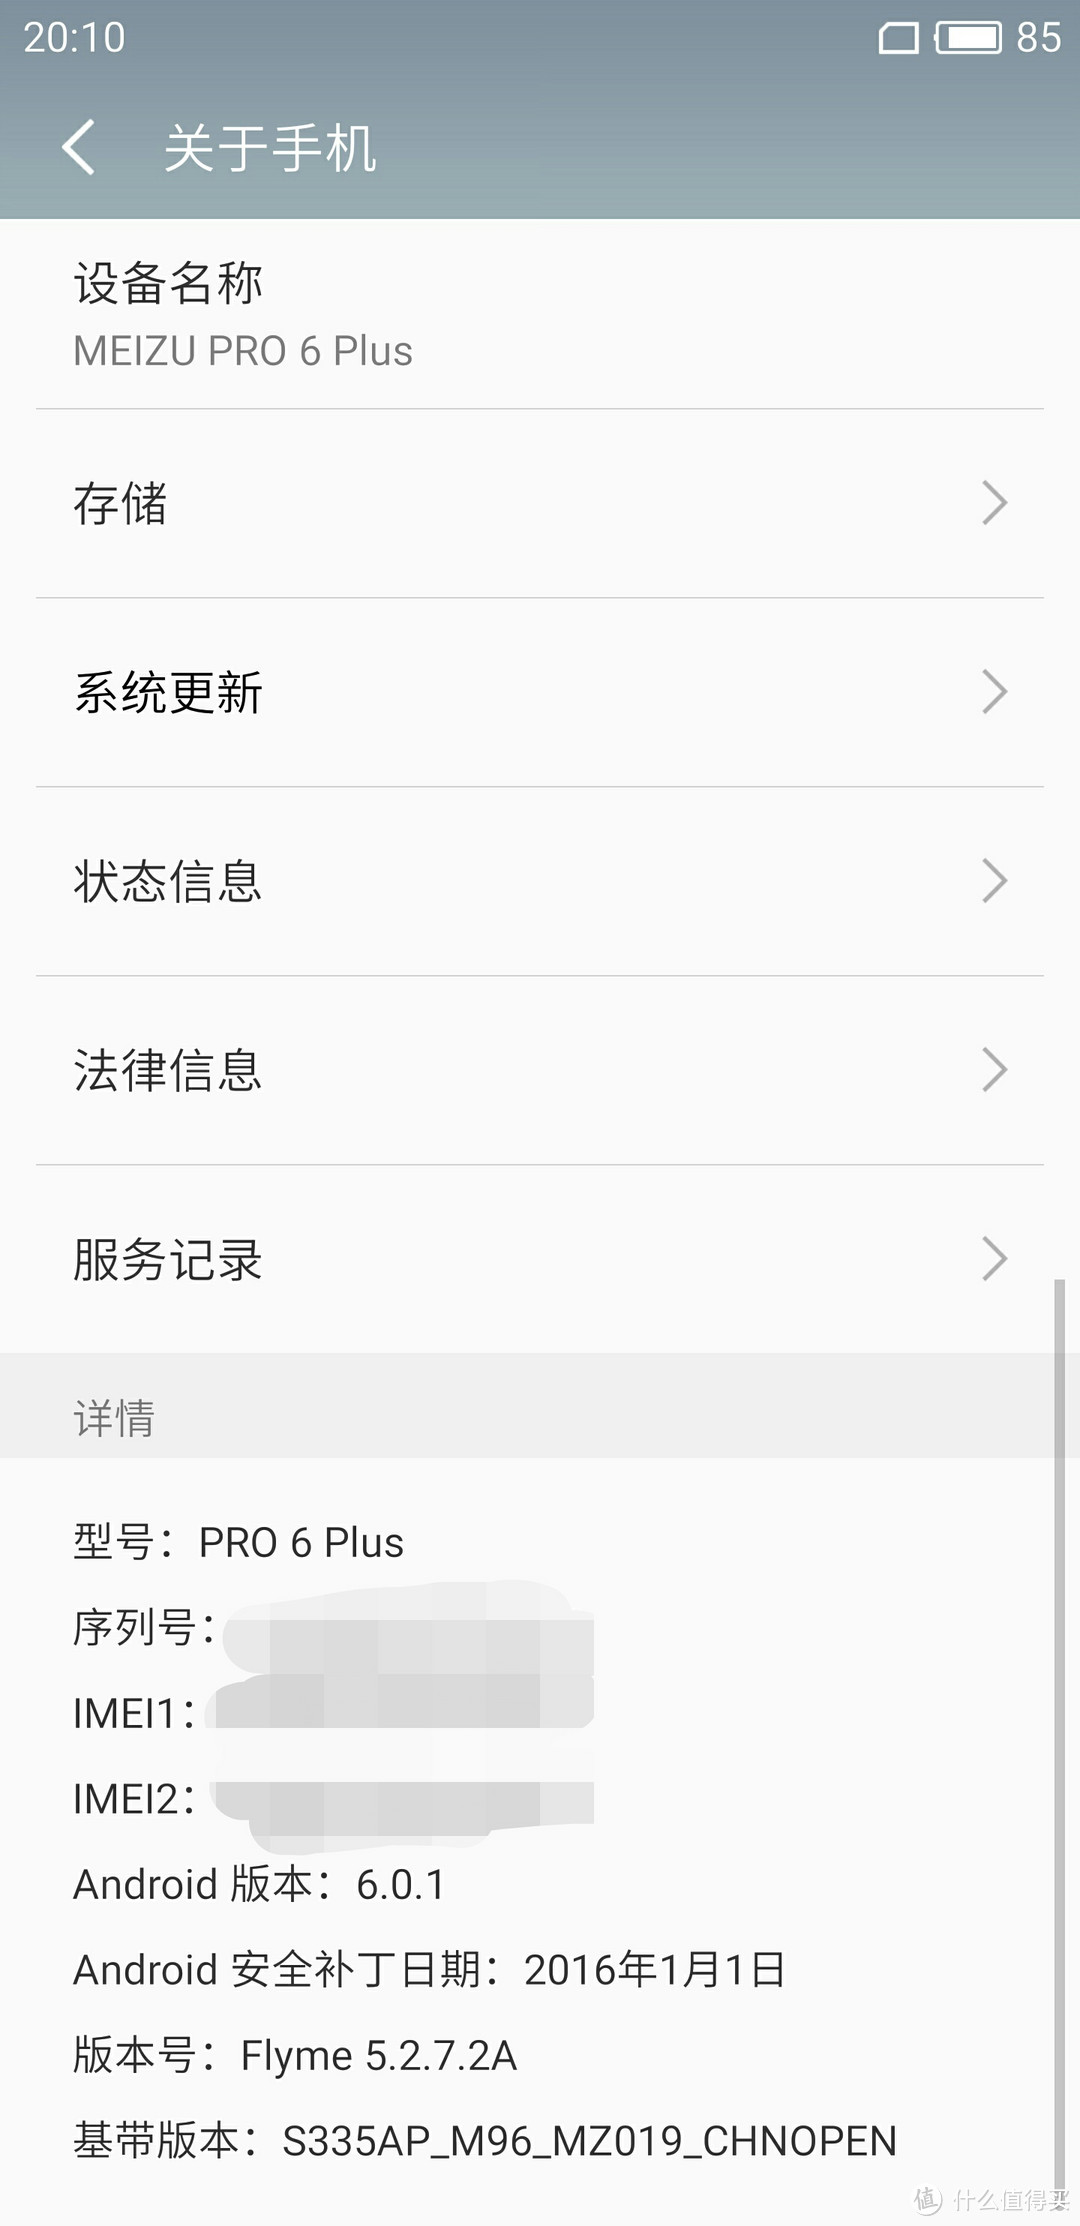 纠结半年的换机终选-----MEIZU 魅族 PRO 6 Plus 旗舰手机 开箱评测